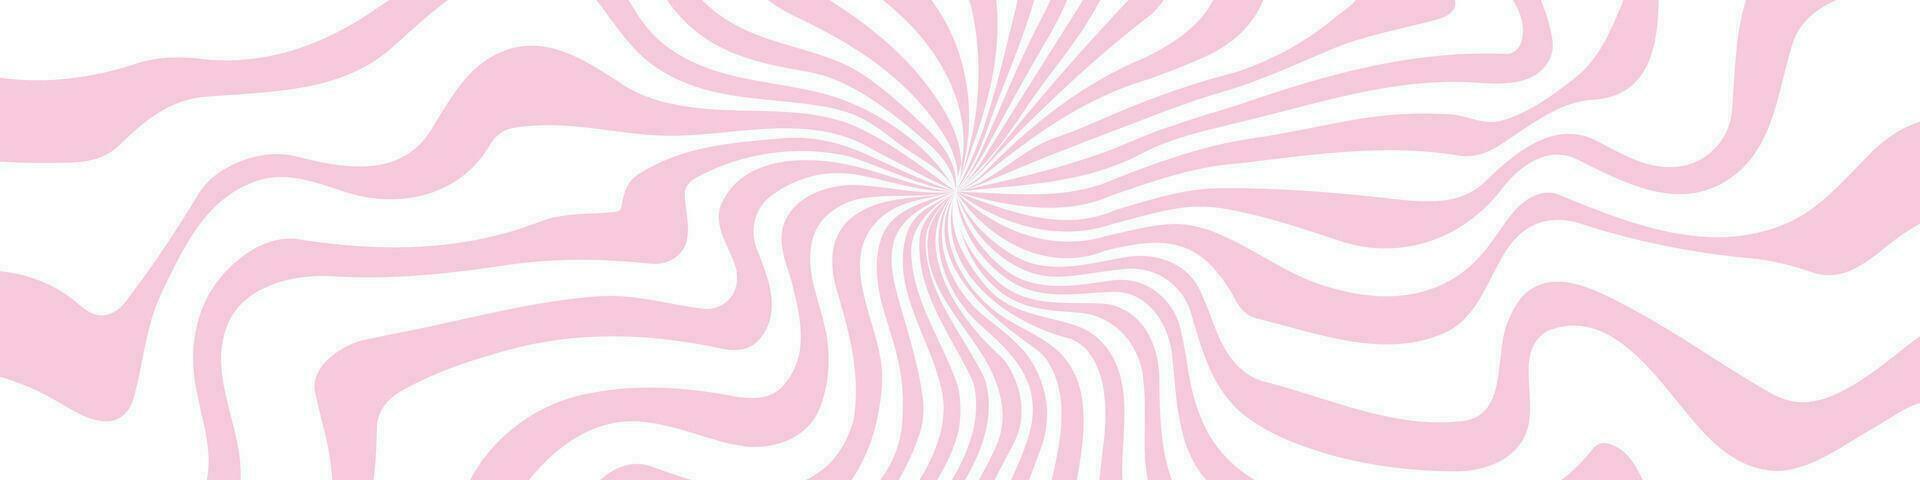 rosado ondulado líneas y giros en un fondo, recordativo de 70s época, encapsulando un psicodélico aura. plano vector ilustraciones aislado